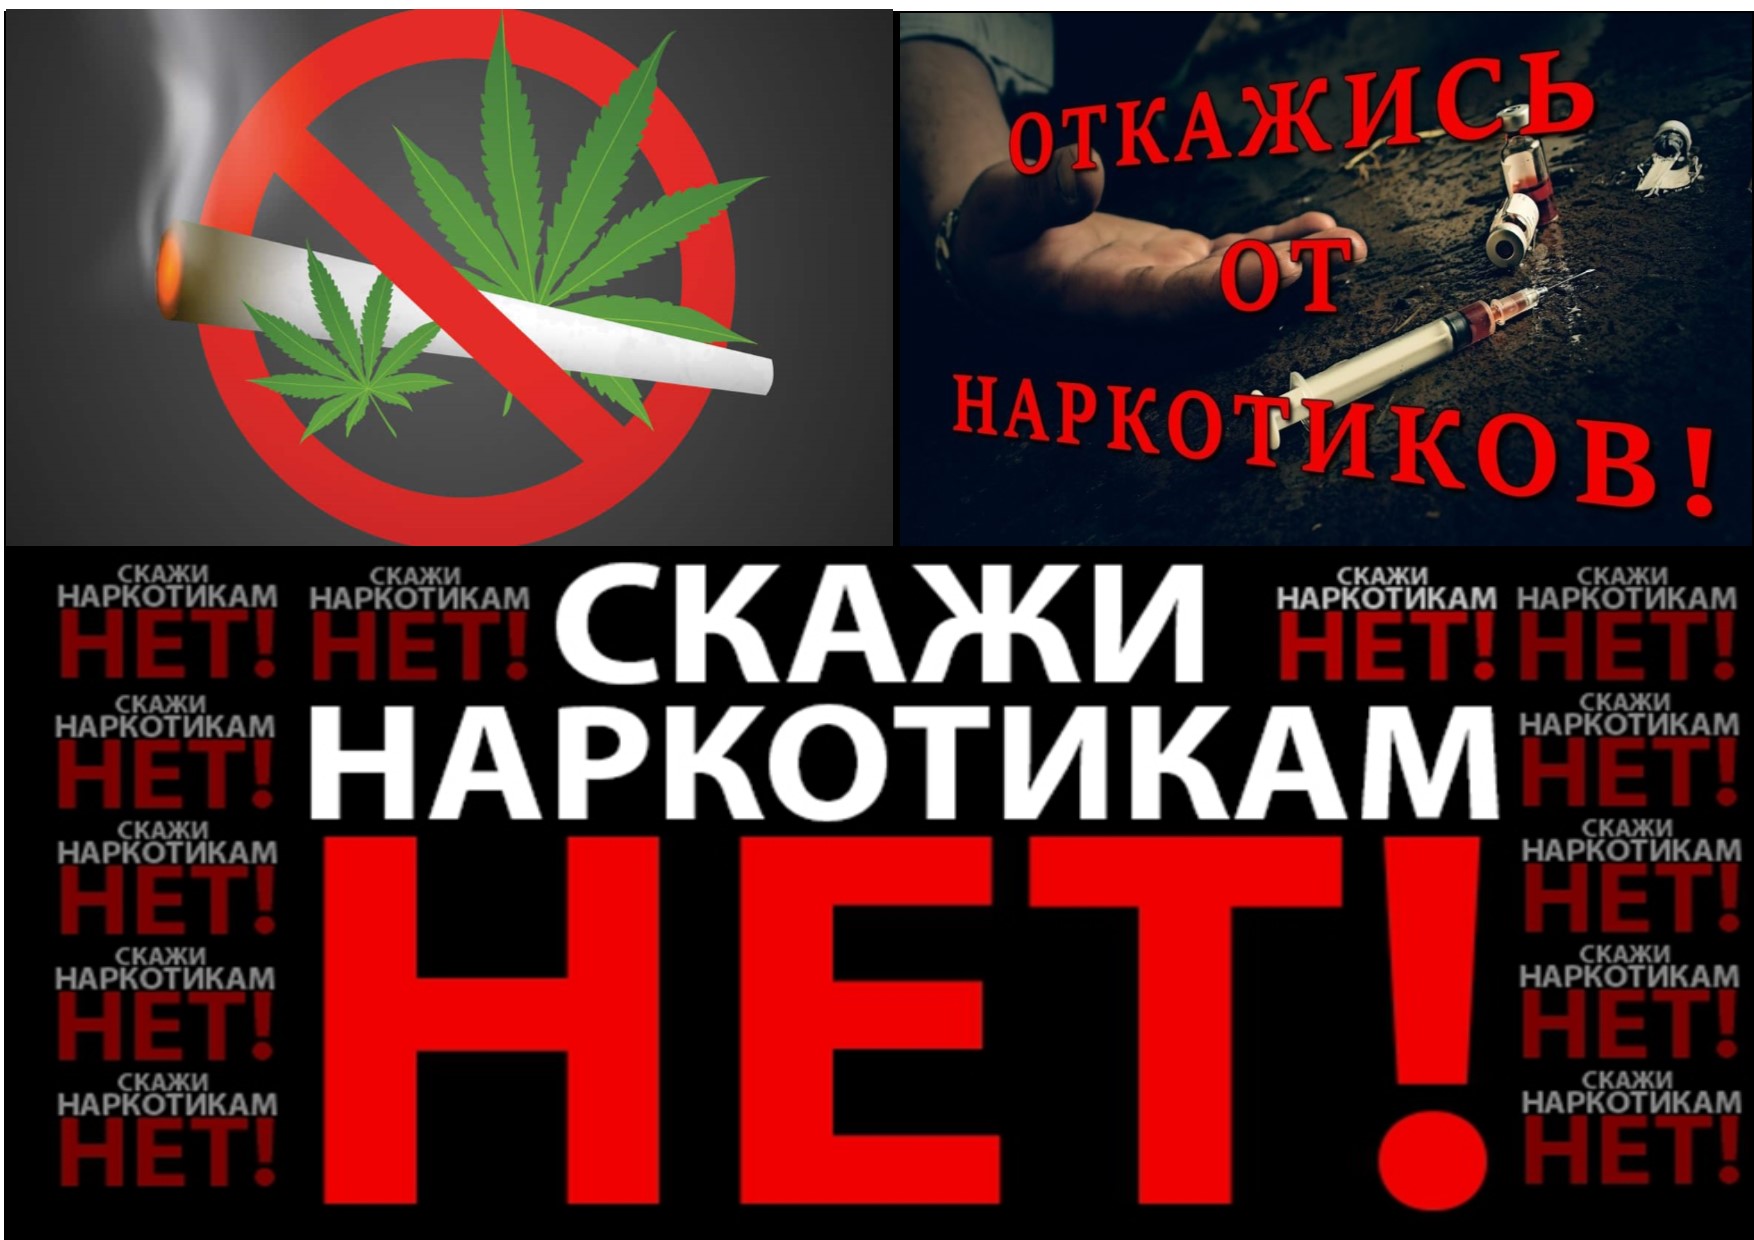 Скажи наркотикам нет картинки даркнет тор на русском